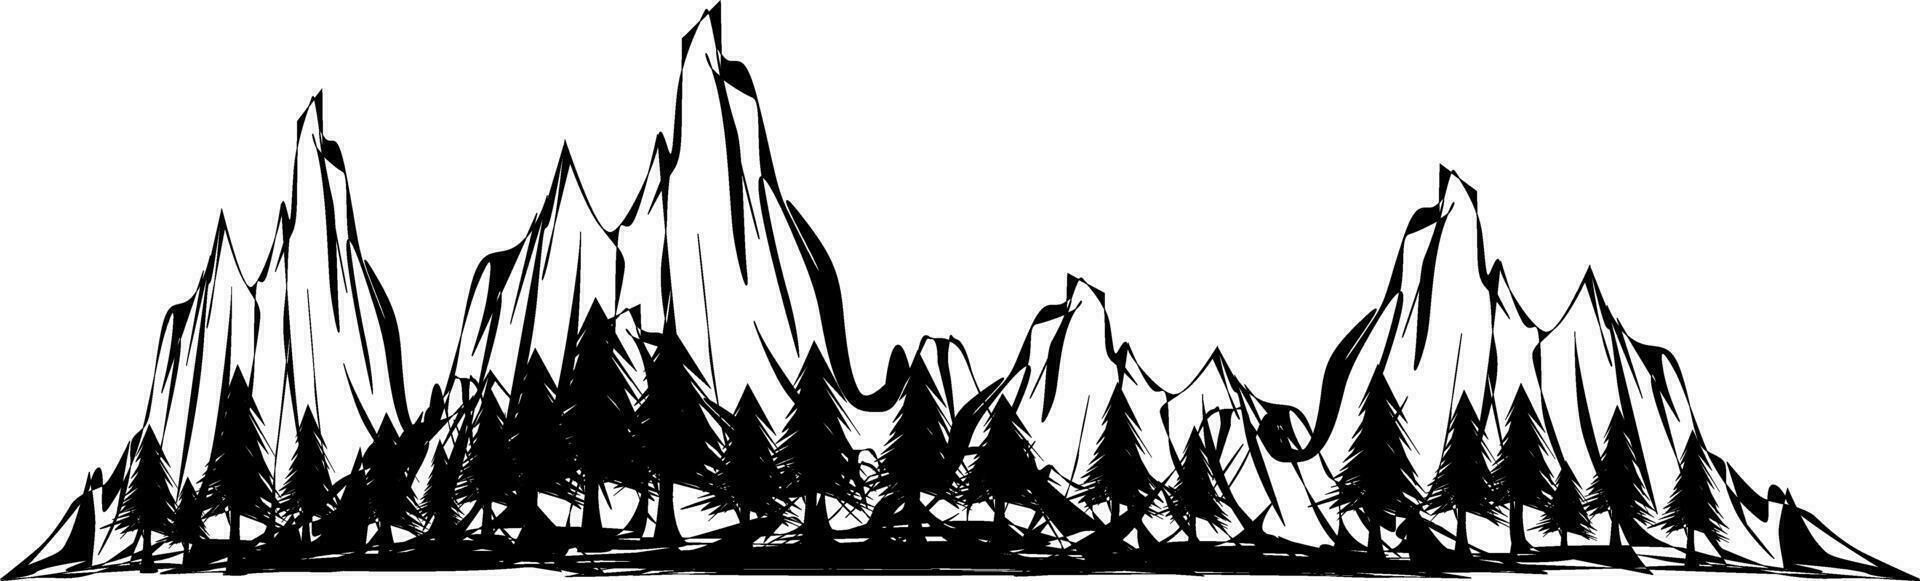 desenhando skecth do a montanha vetor